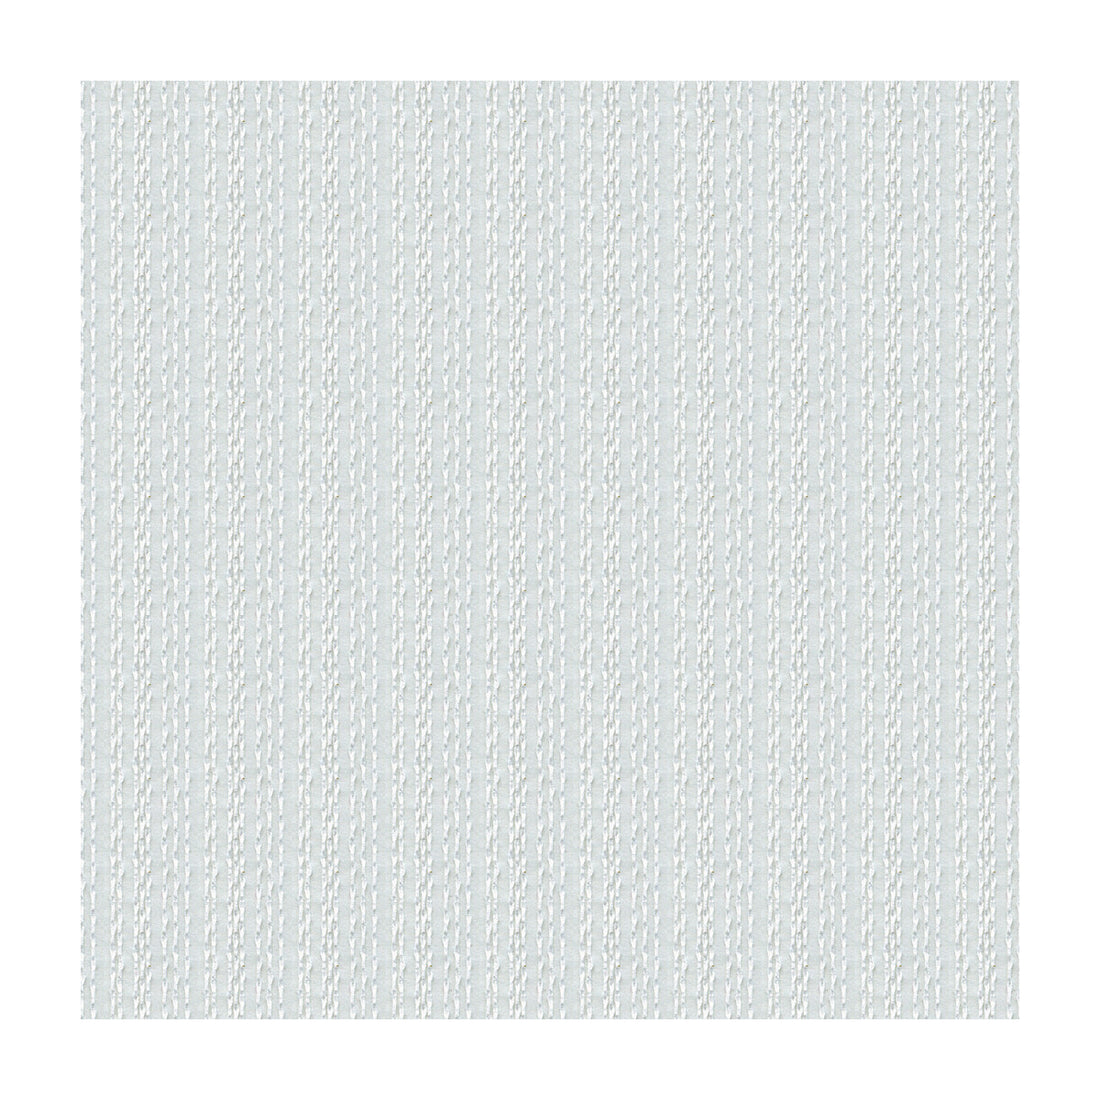 Kravet Basics fabric in 4133-101 color - pattern 4133.101.0 - by Kravet Basics